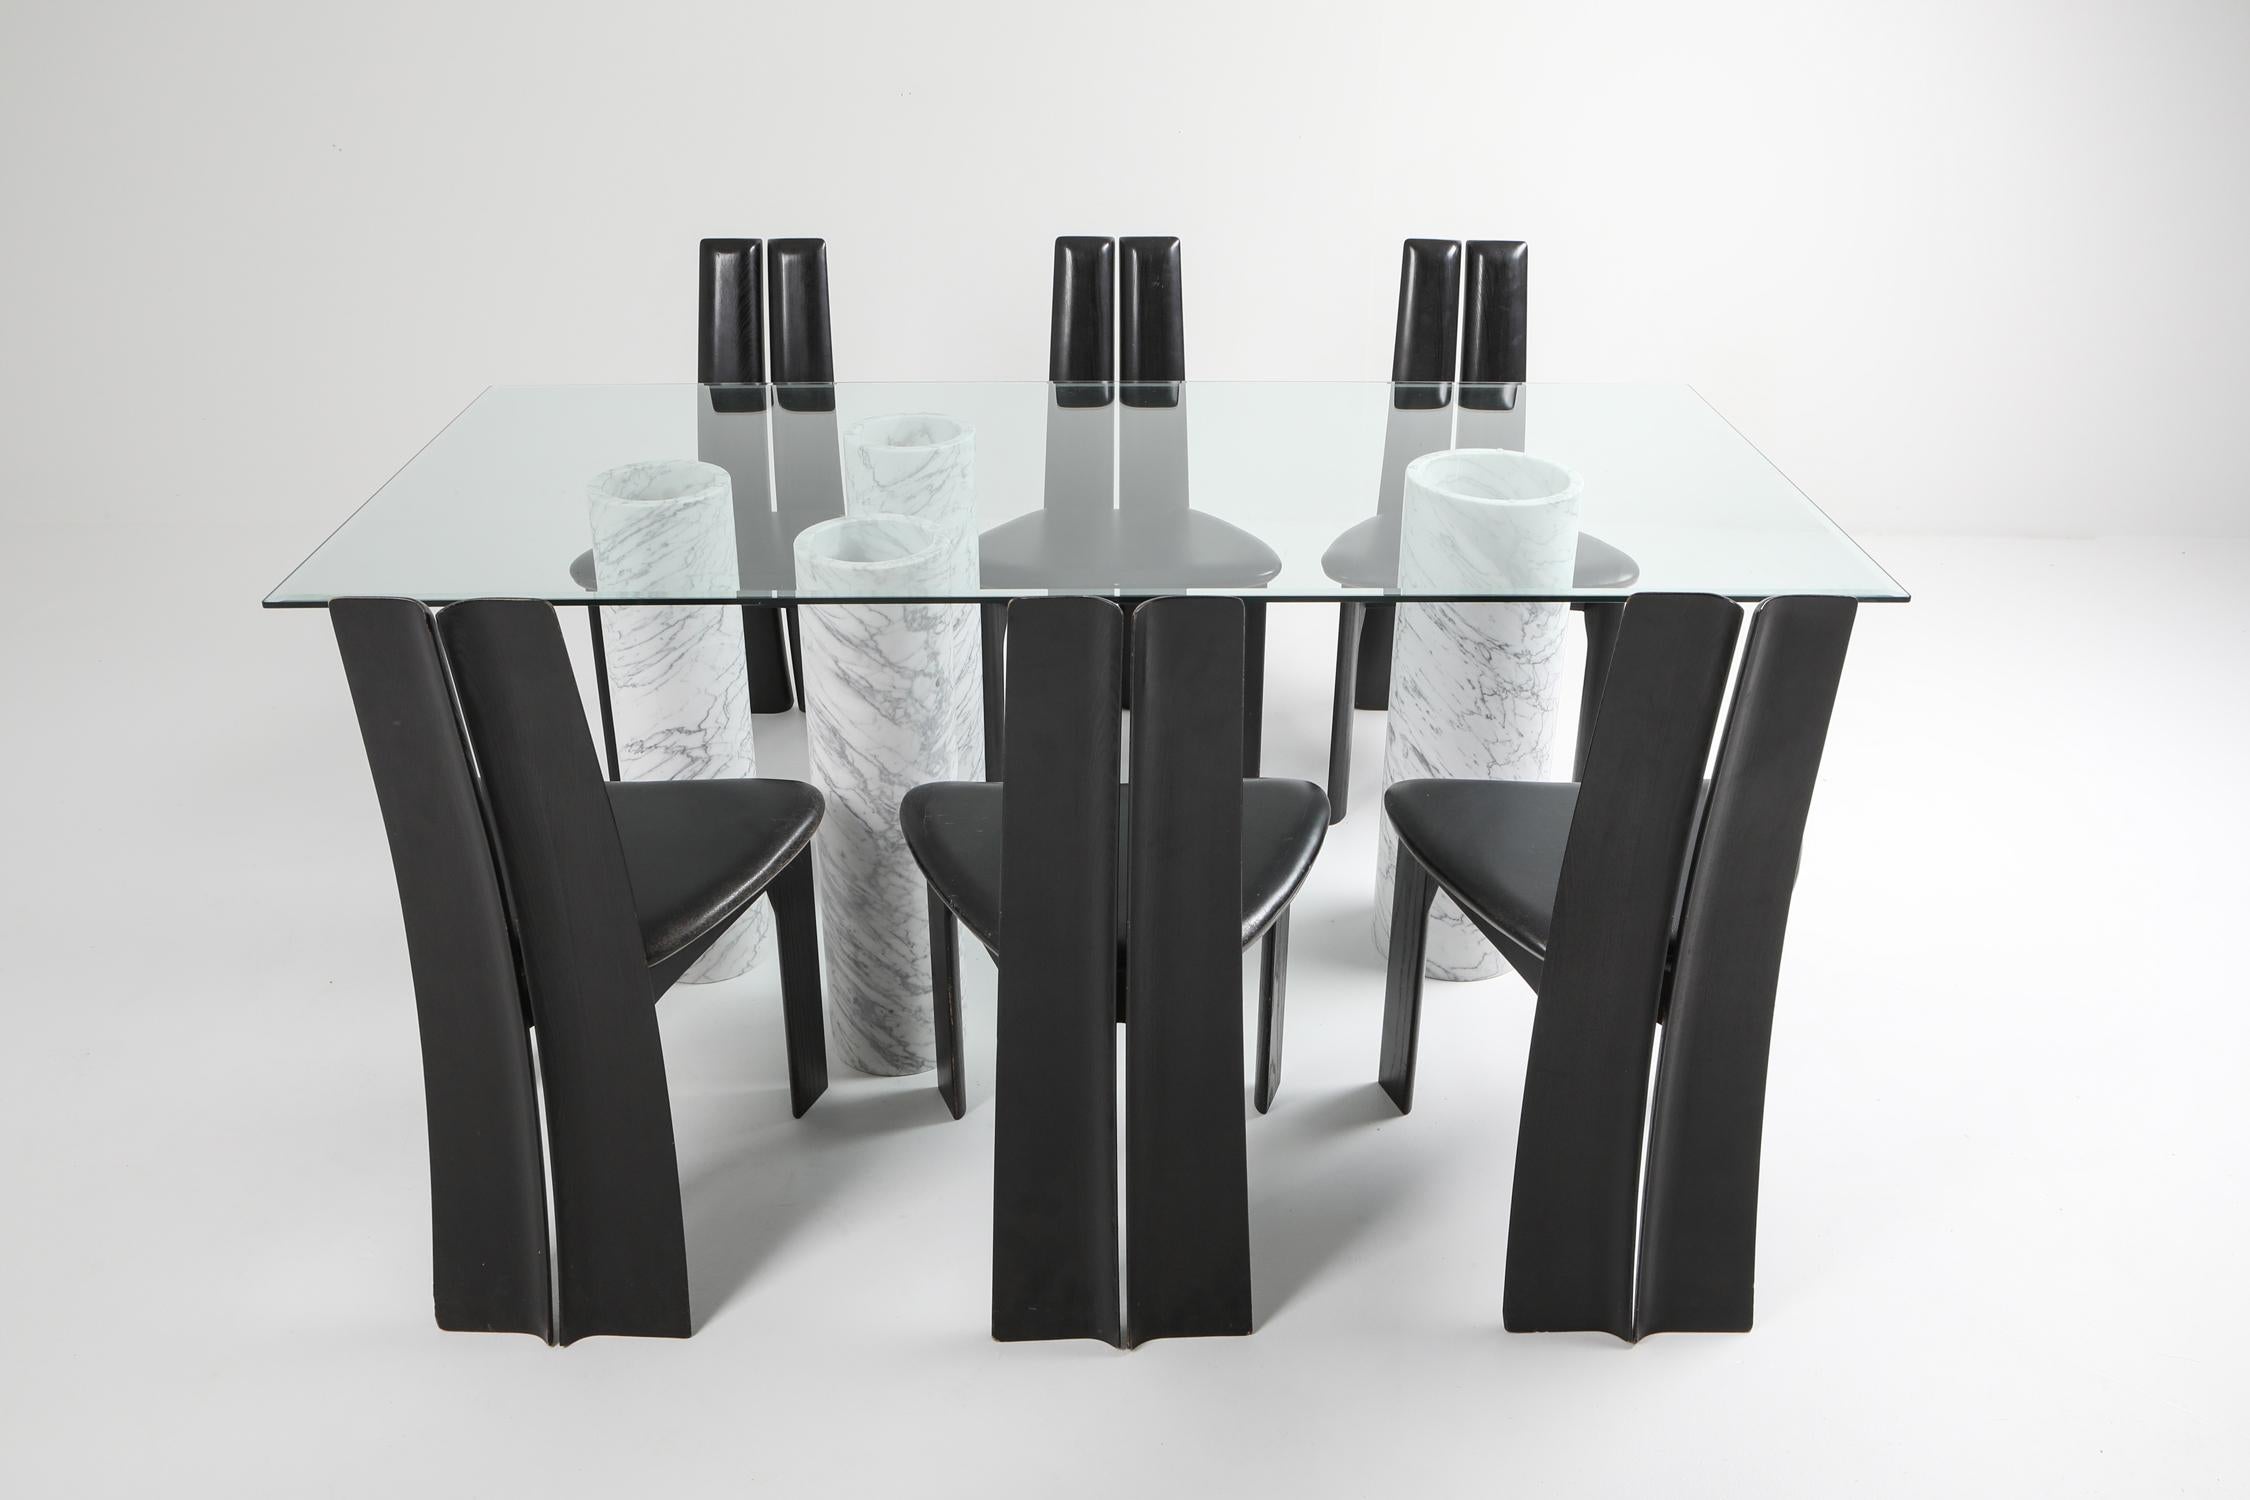 Carrara 'Collonato' Table with Glass Top in the Style of Mario Bellini 1